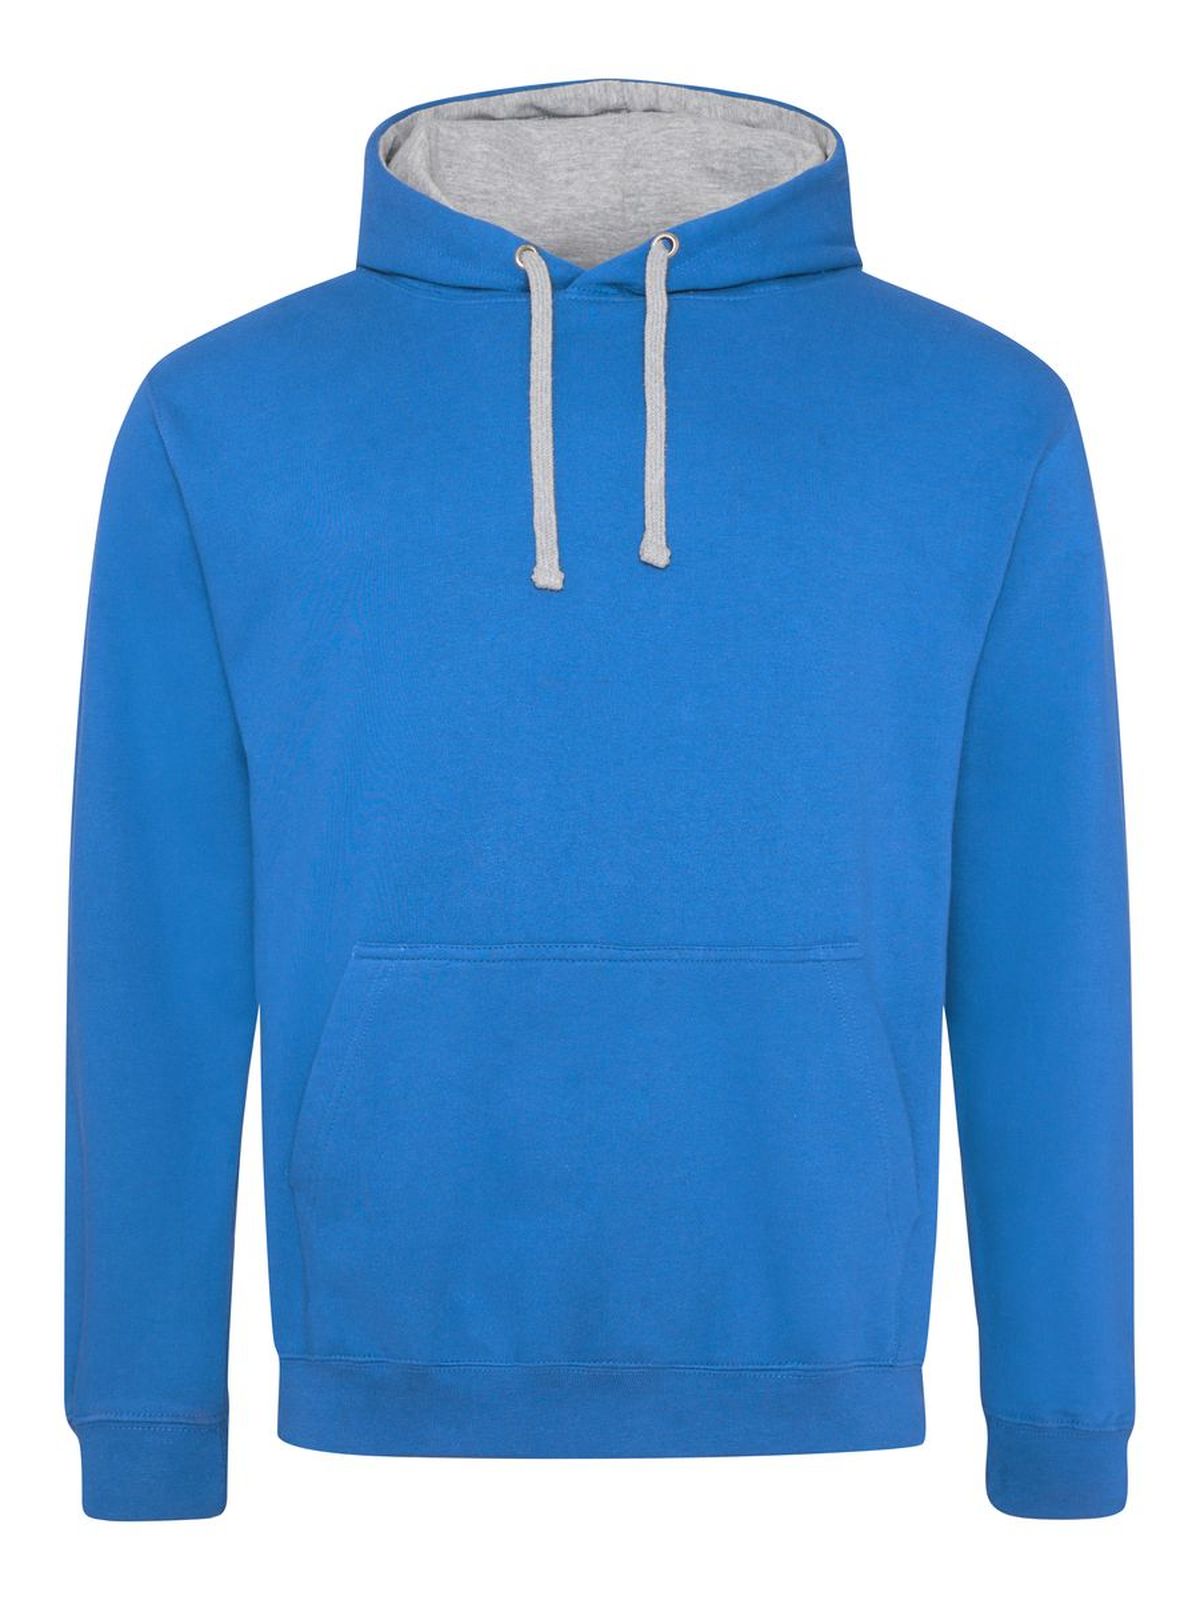 varsity-hoodie-sapphire-blue-heather-grey.webp